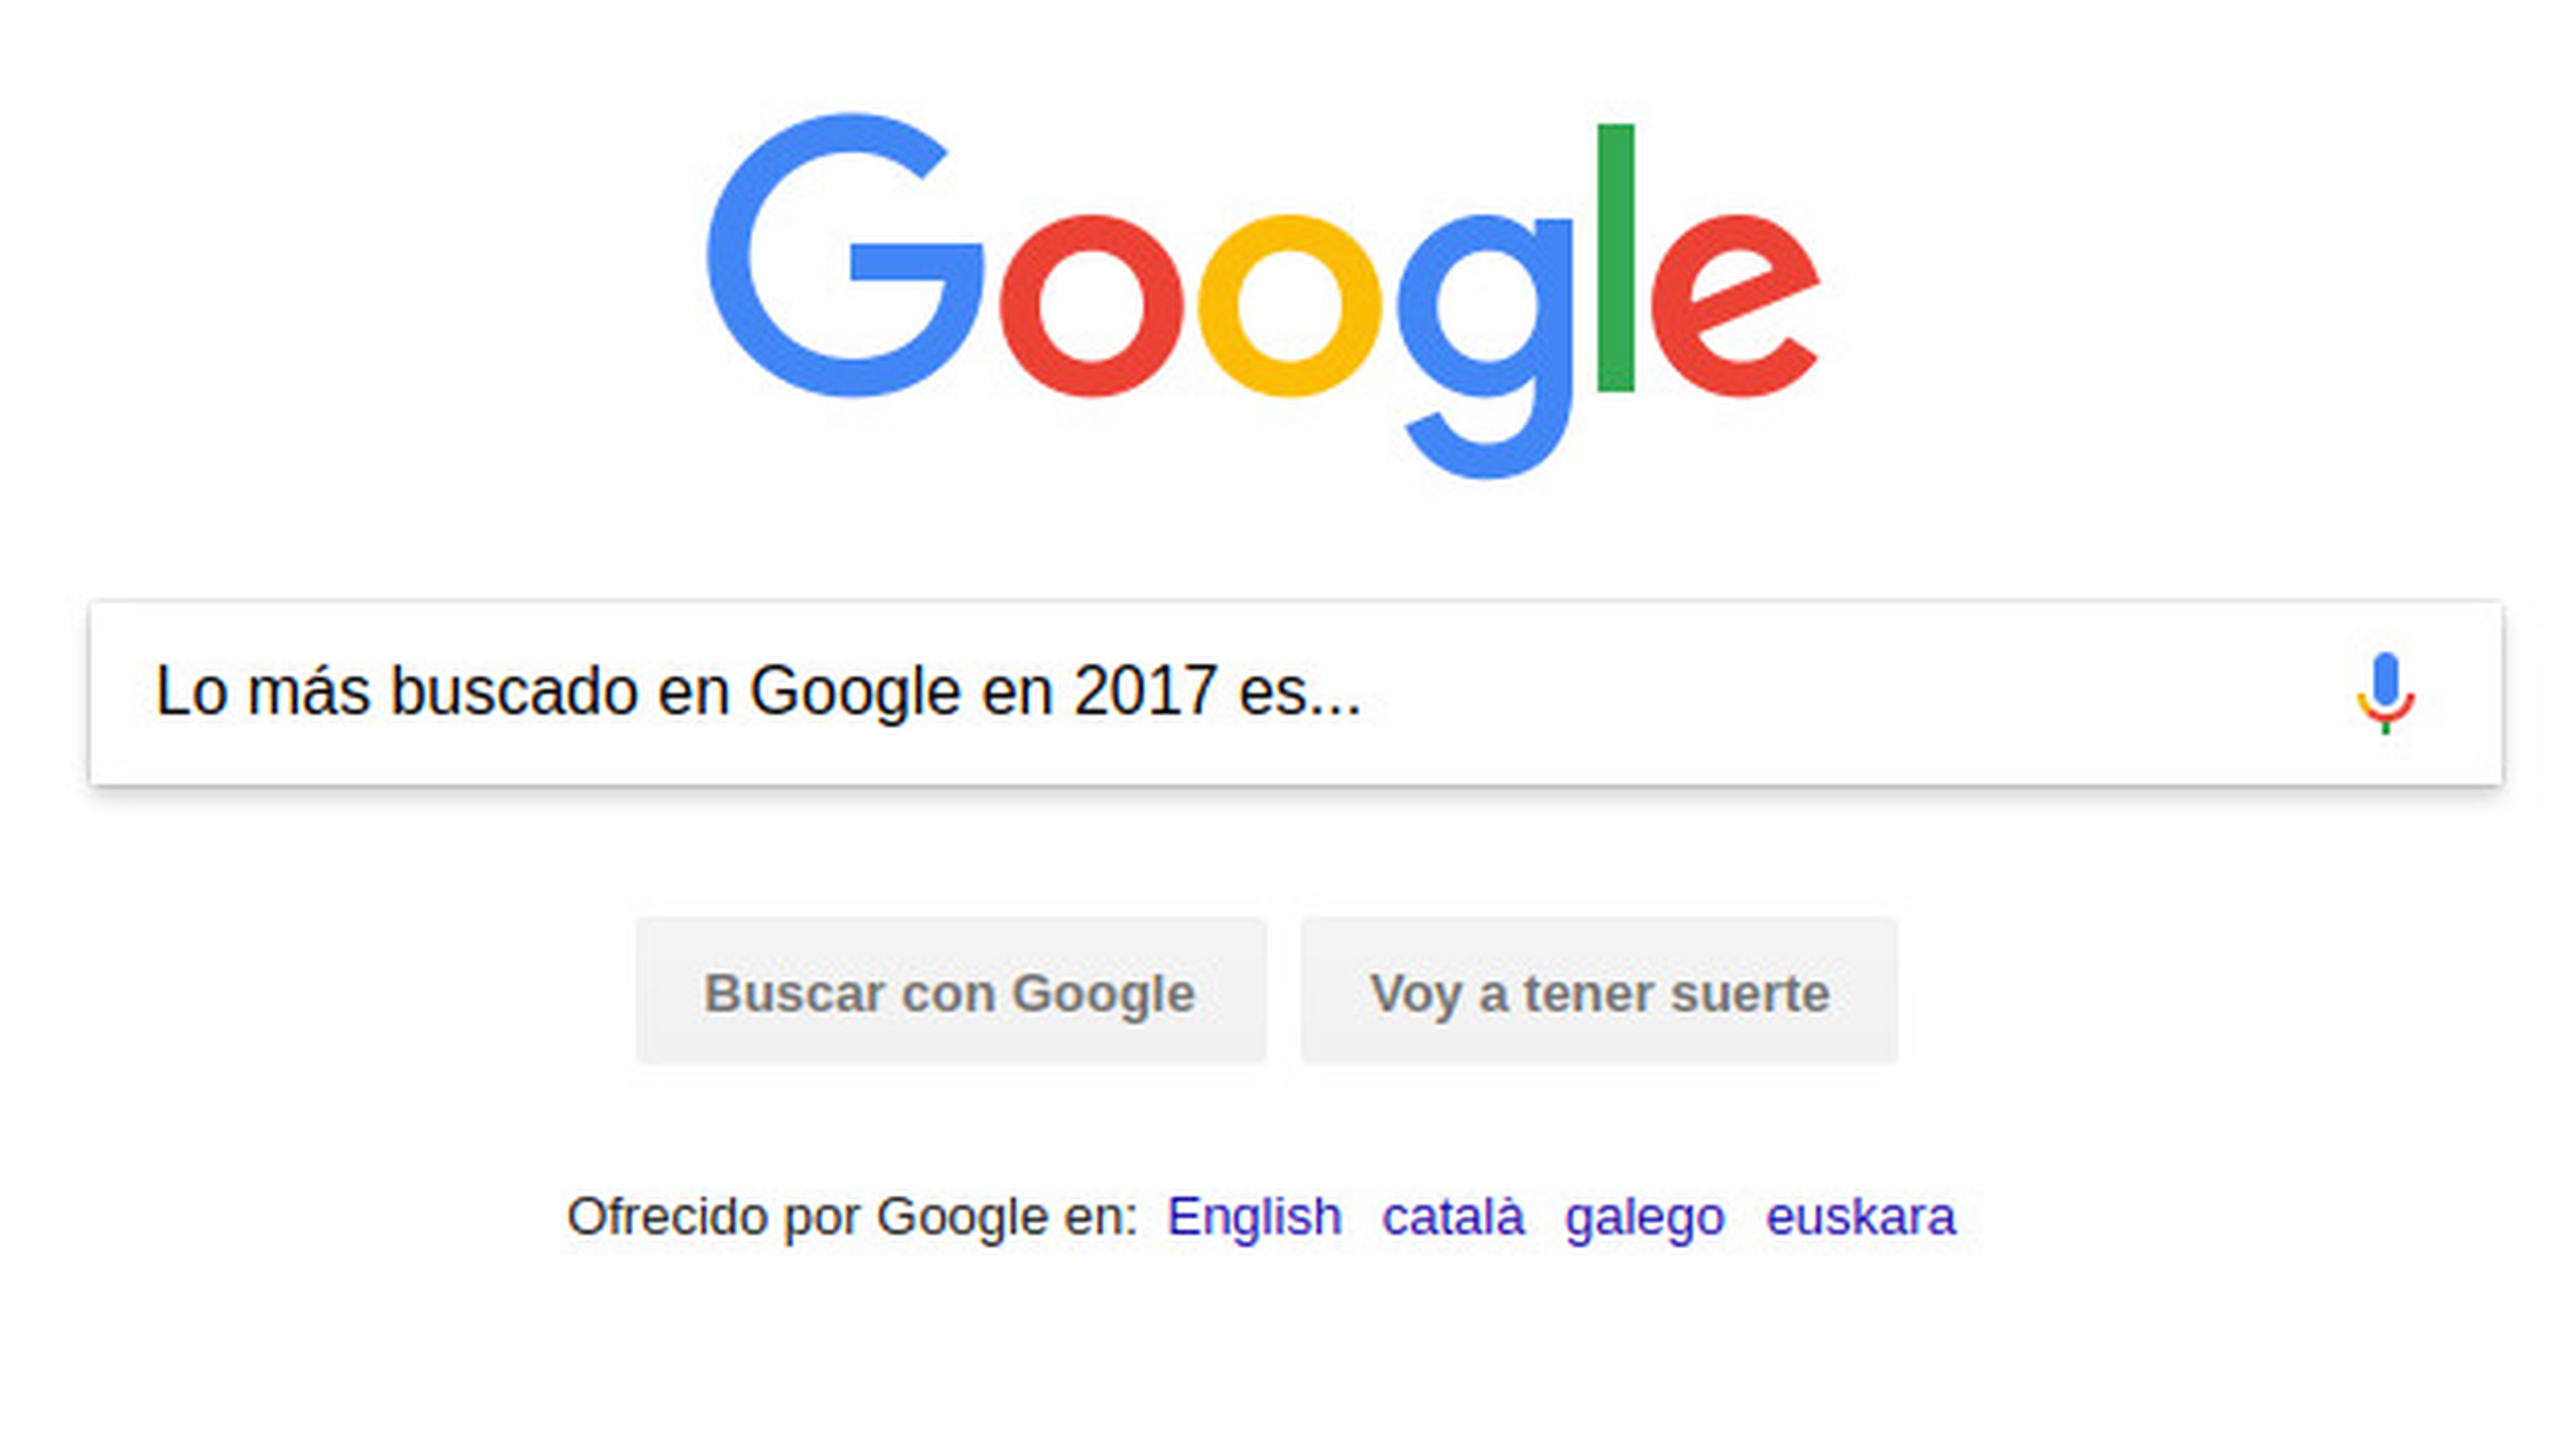 Lo más buscado en Google en 2017.